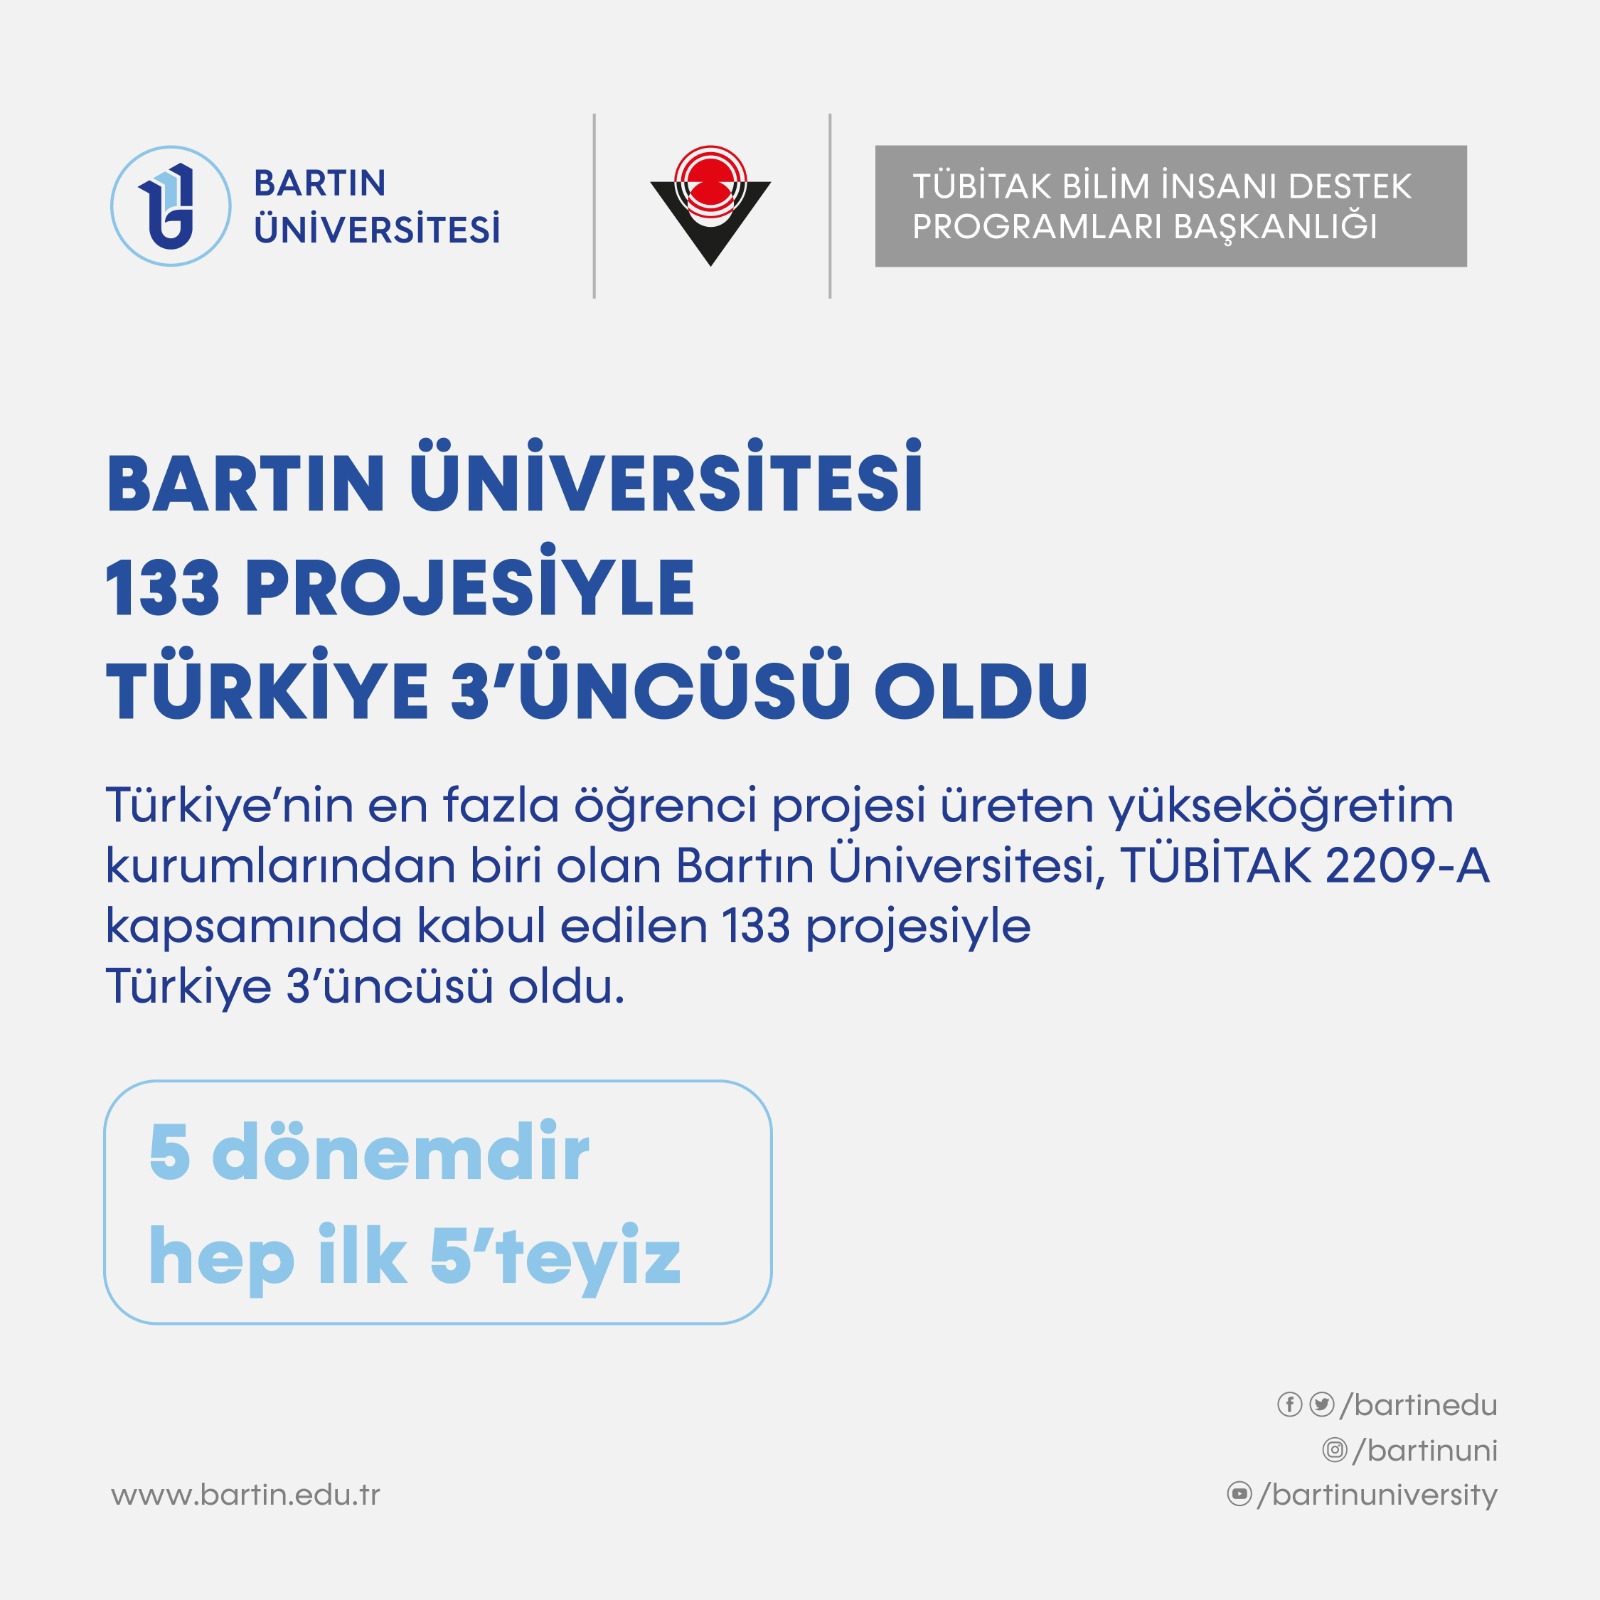 Bartın Üniversitesi kabul edilen 133 projesiyle Türkiye 3’üncüsü oldu

